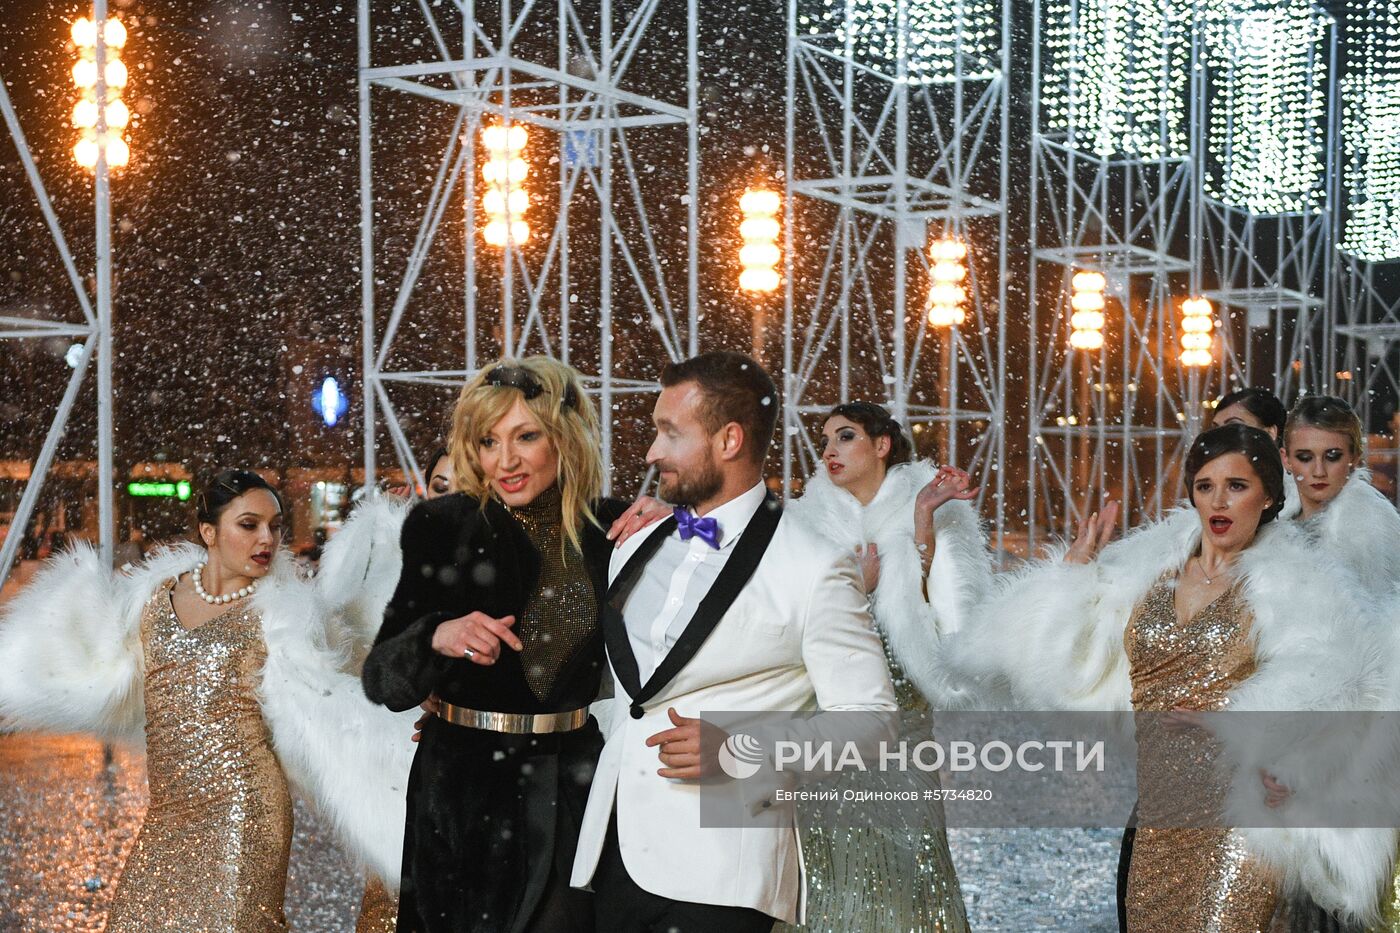 Съёмки новогодней передачи Первого канала